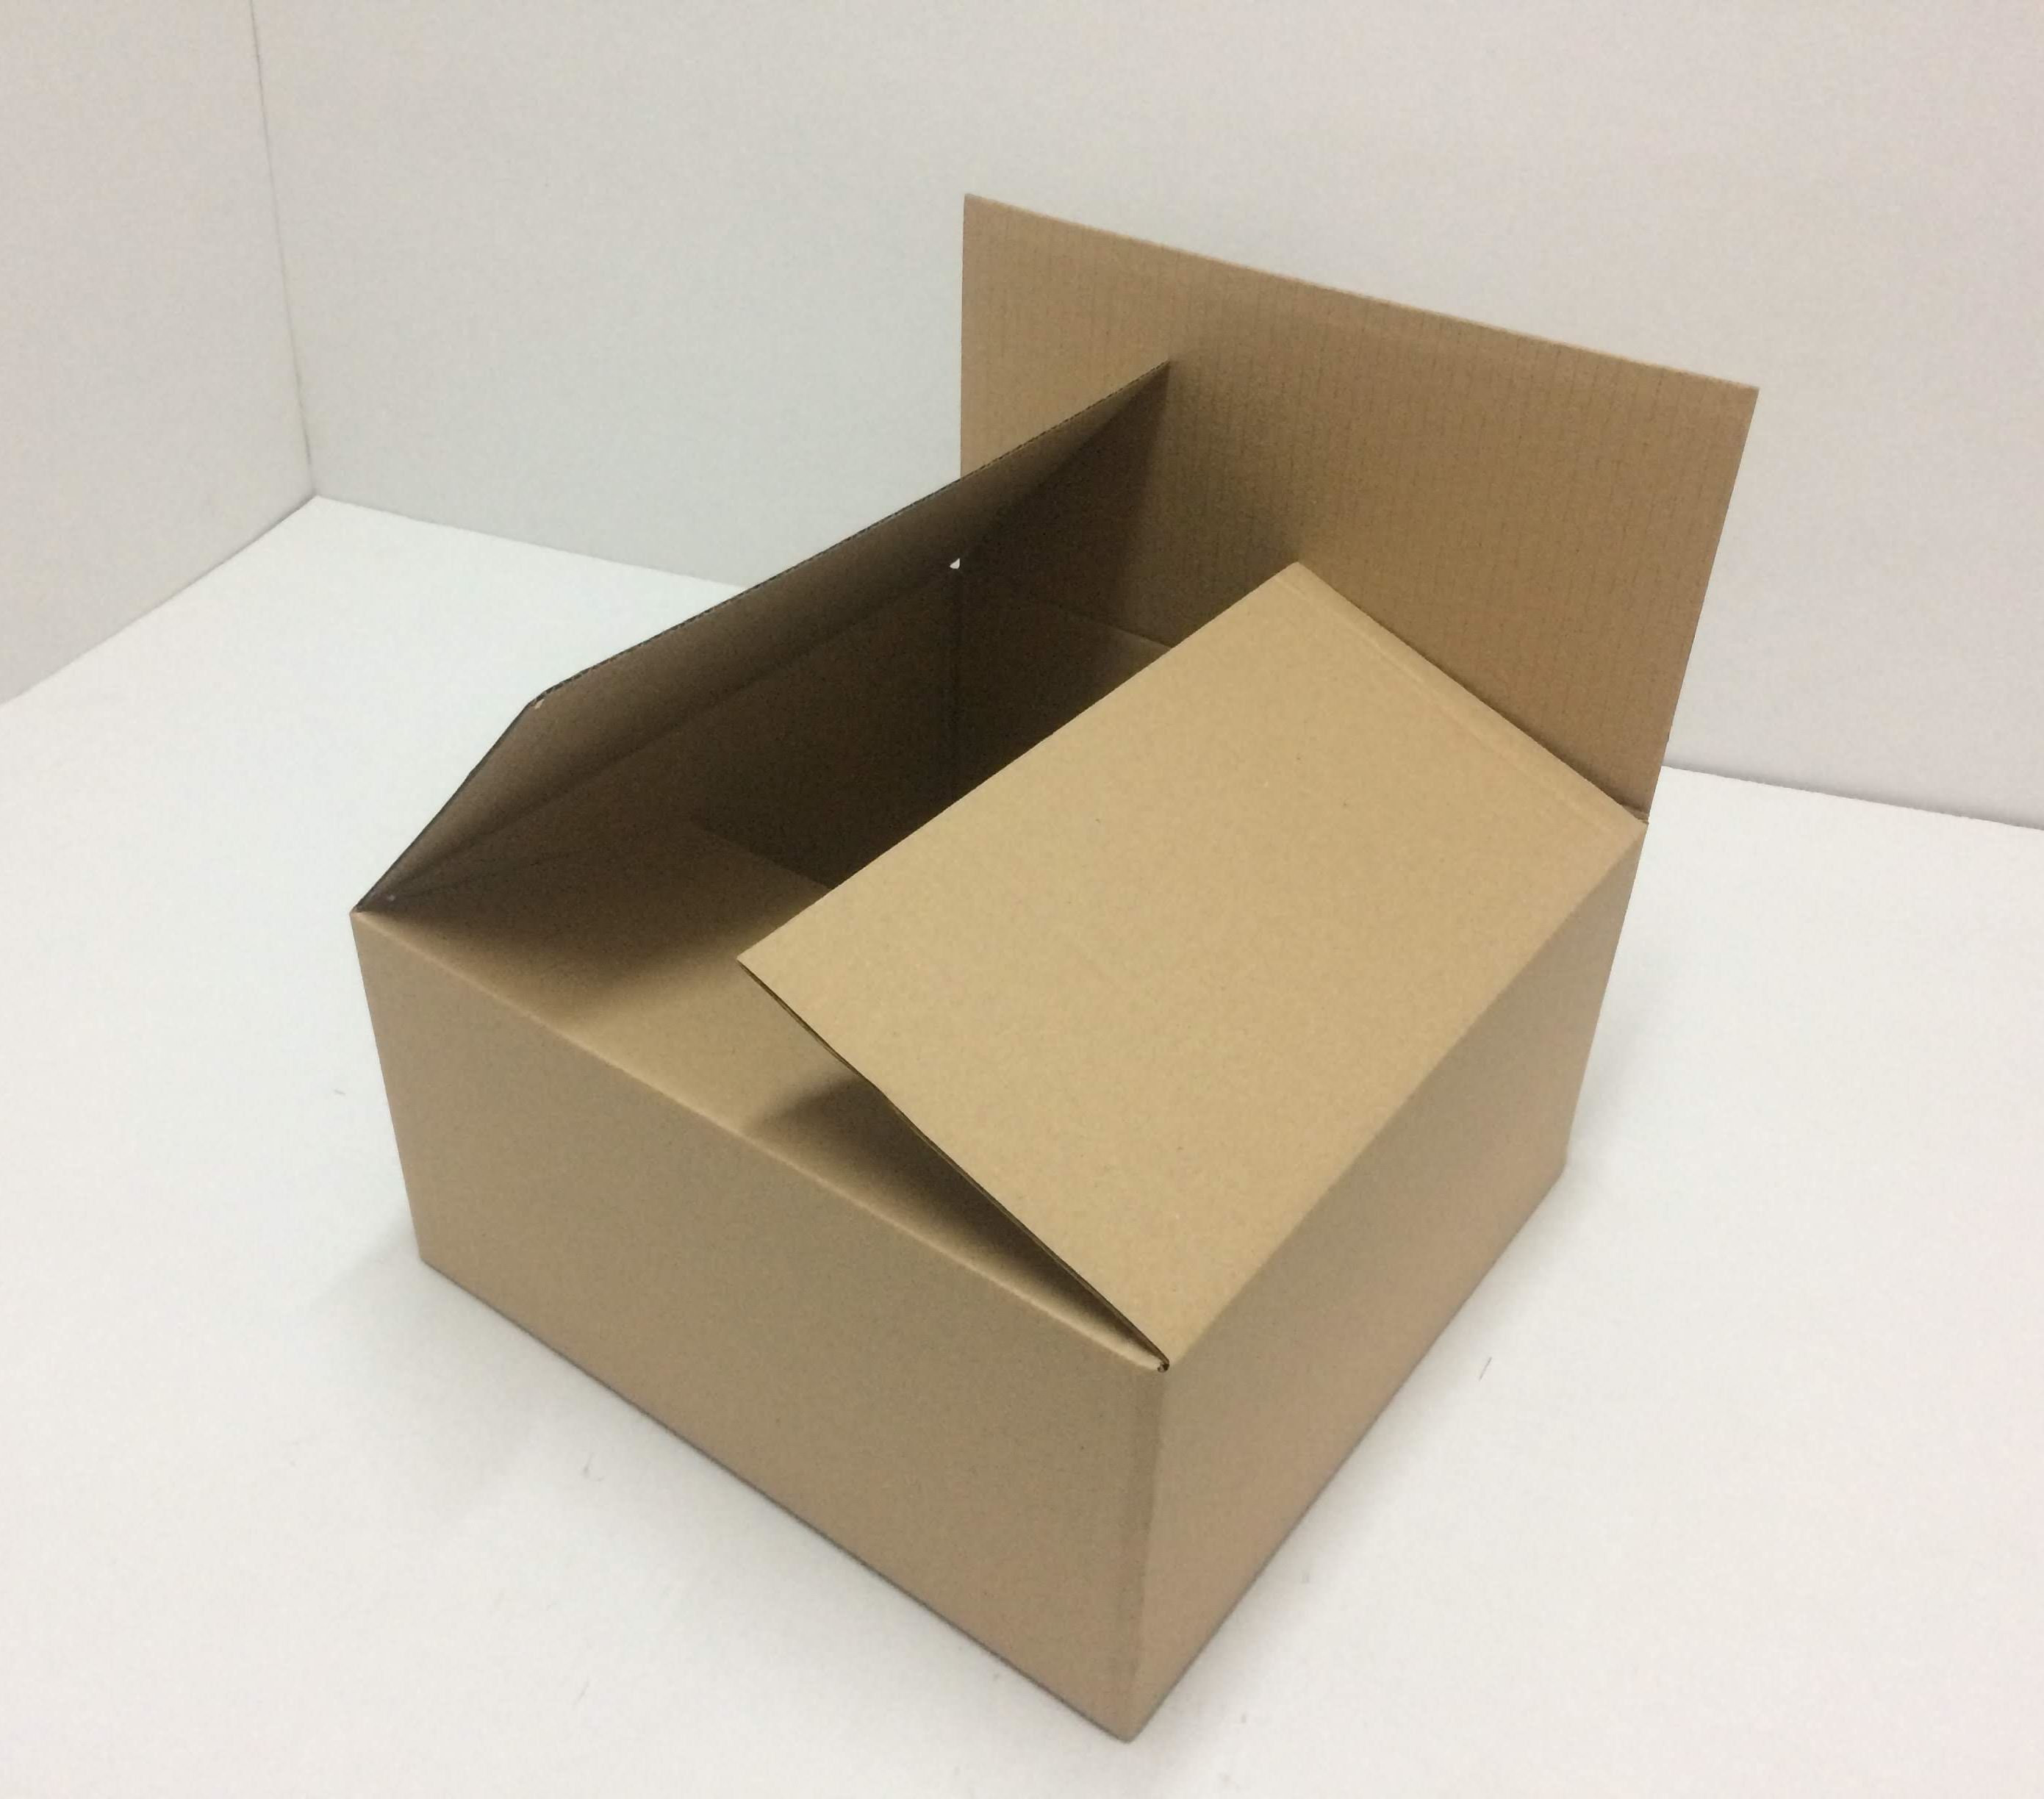 kartónová krabica 400x400x300mm   3VL, 15ks/balenie, vonkajší rozmer,    č.49